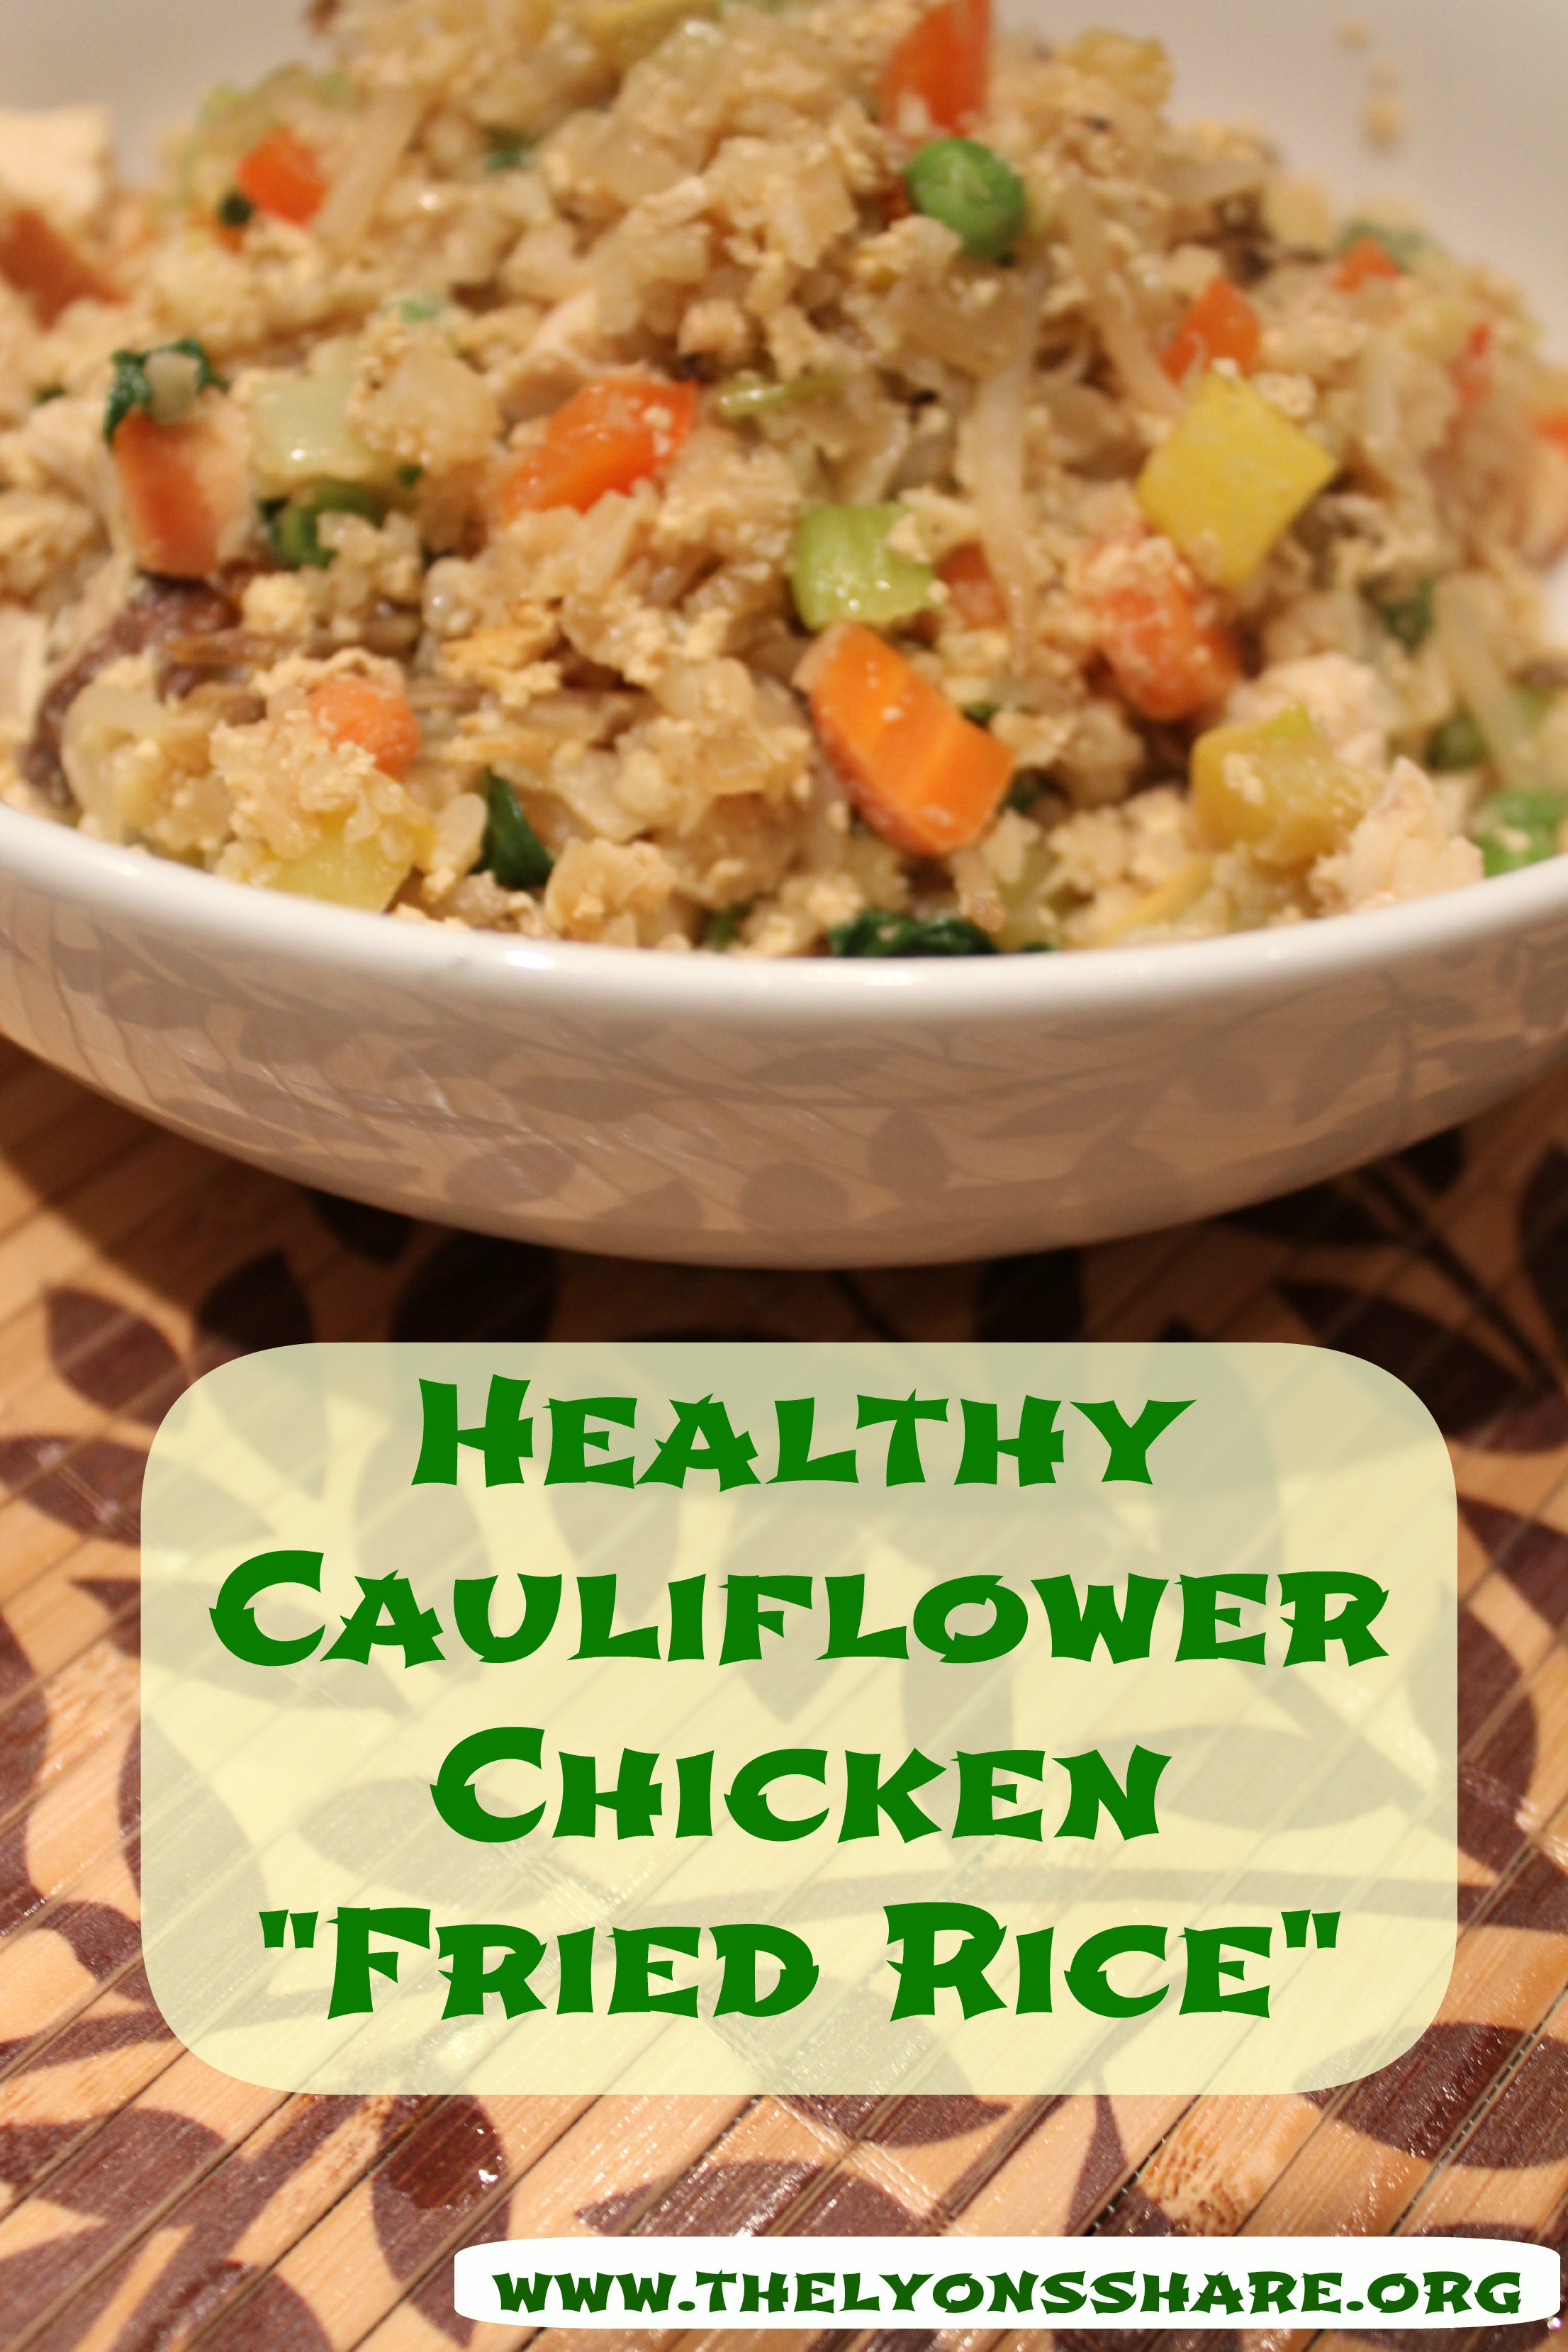 Is Chicken Fried Rice Healthy
 Healthy Cauliflower Chicken "Fried Rice"